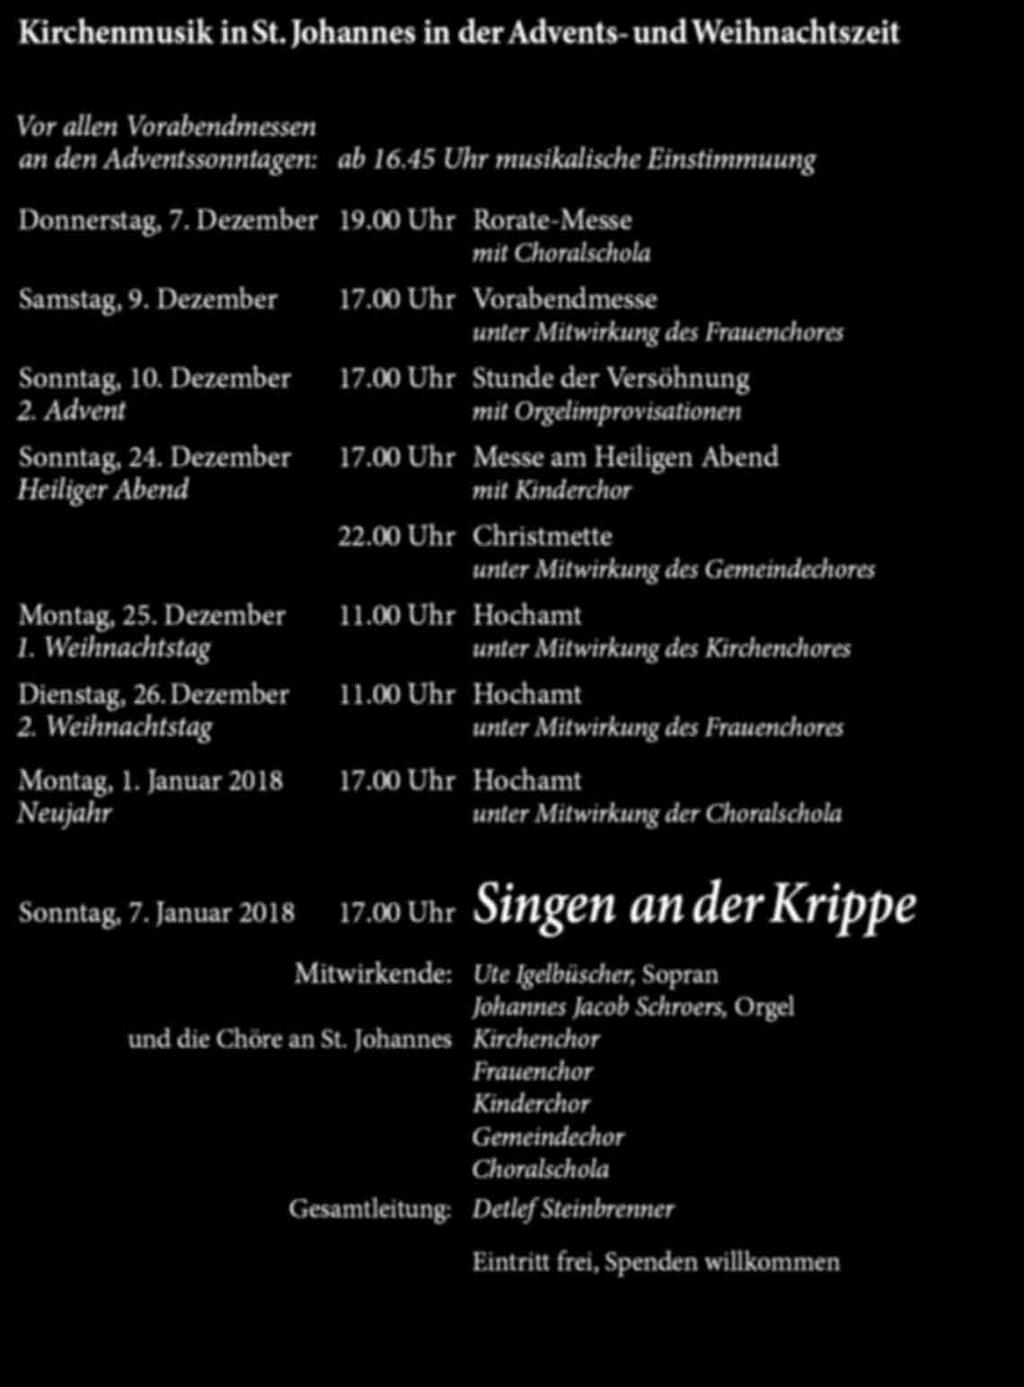 Advent mit Orgelimprovisationen Sonntag, 24. Dezember Heiliger Abend 17.00 Uhr Messe am Heiligen Abend mit Kinderchor 22.00 Uhr Christmette unter Mitwirkung des Gemeindechores Montag, 25. Dezember 11.